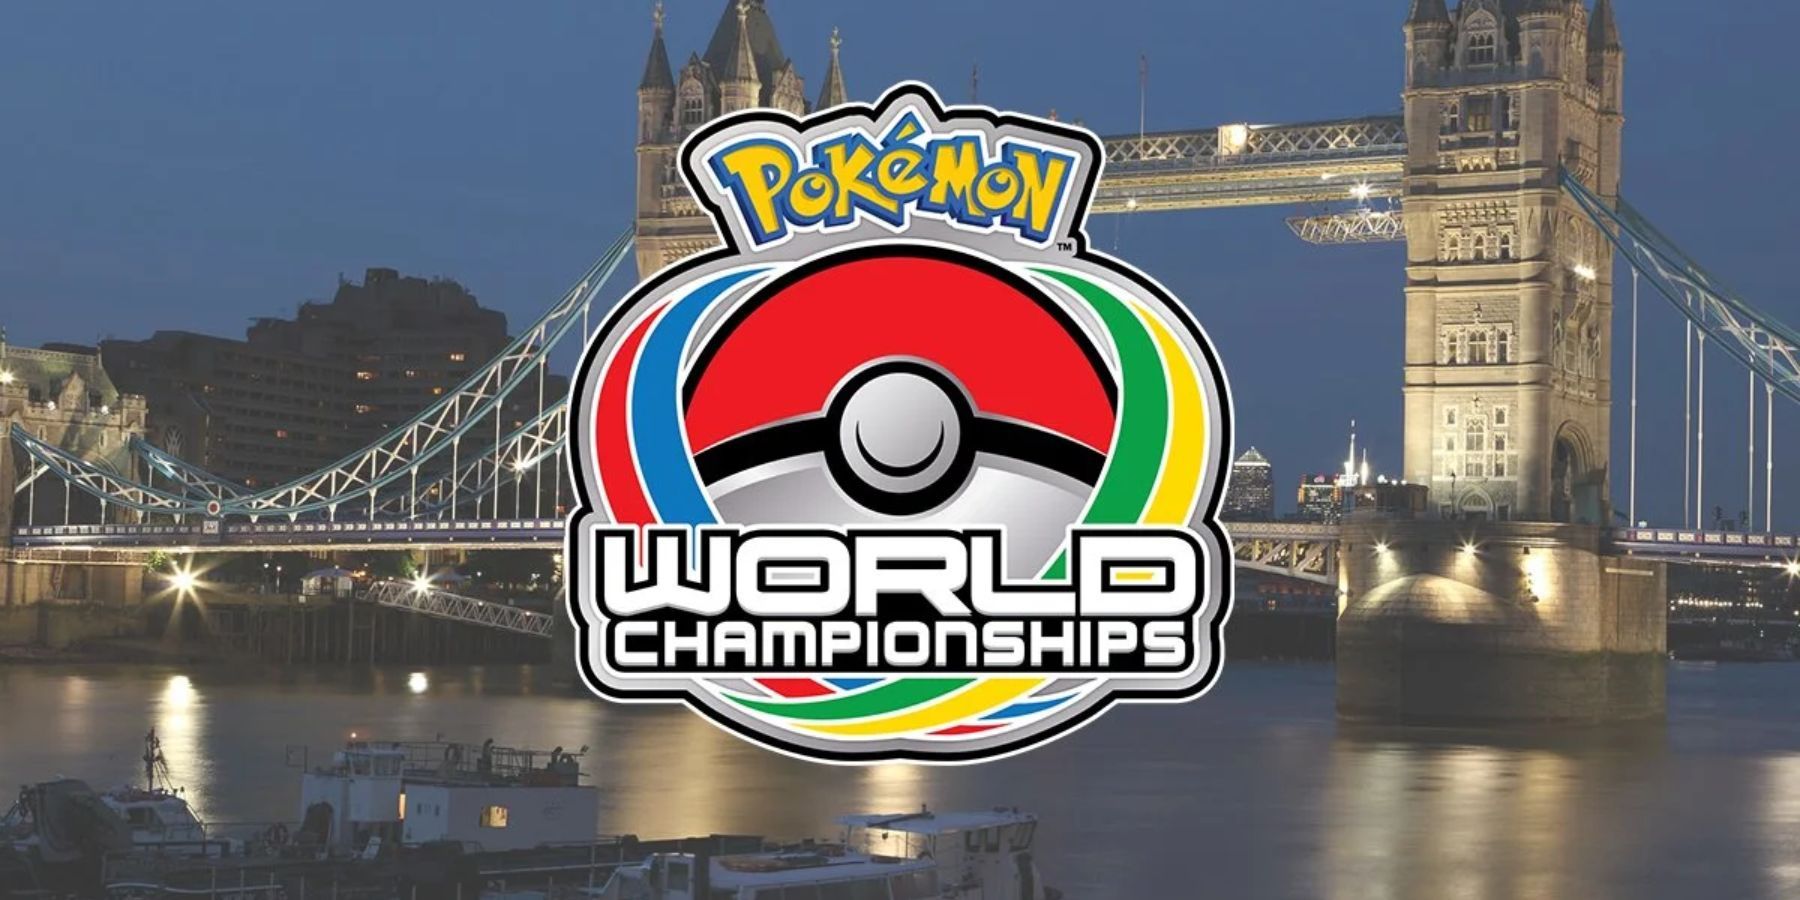 World Championships Streaming links for Pokemon GO